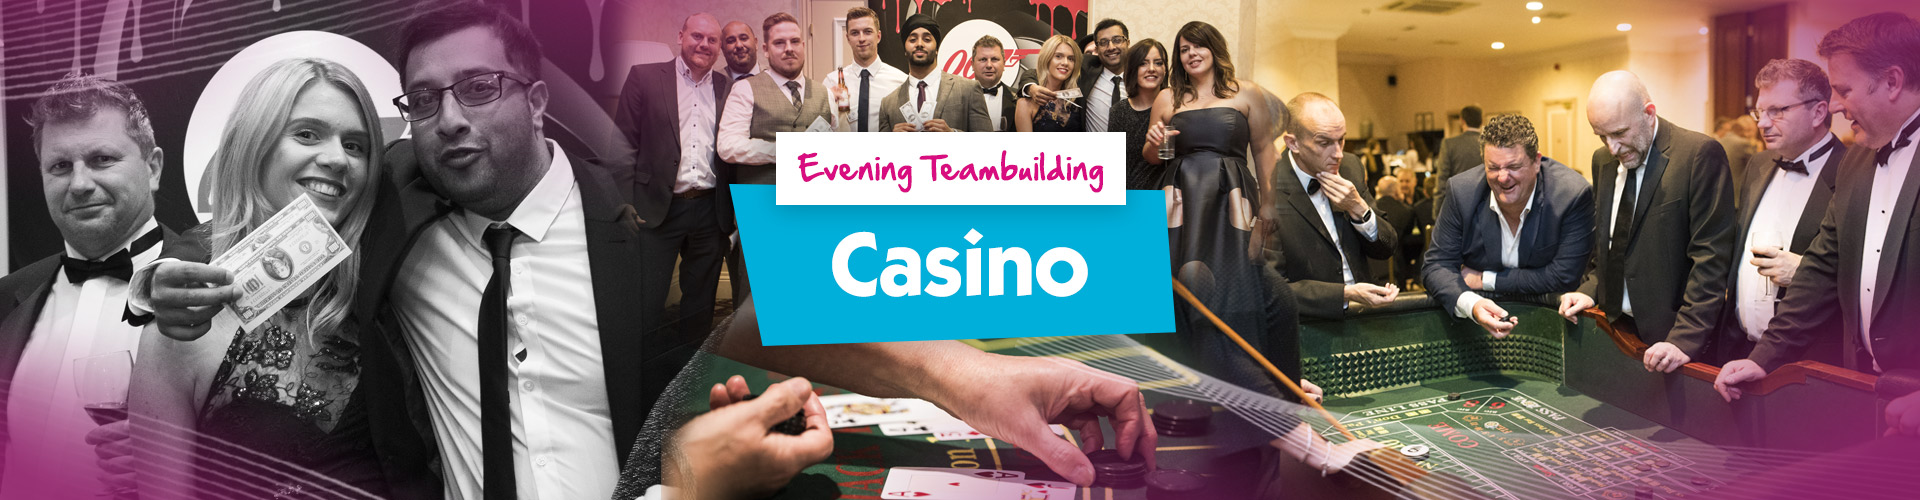 Team Building | Casino